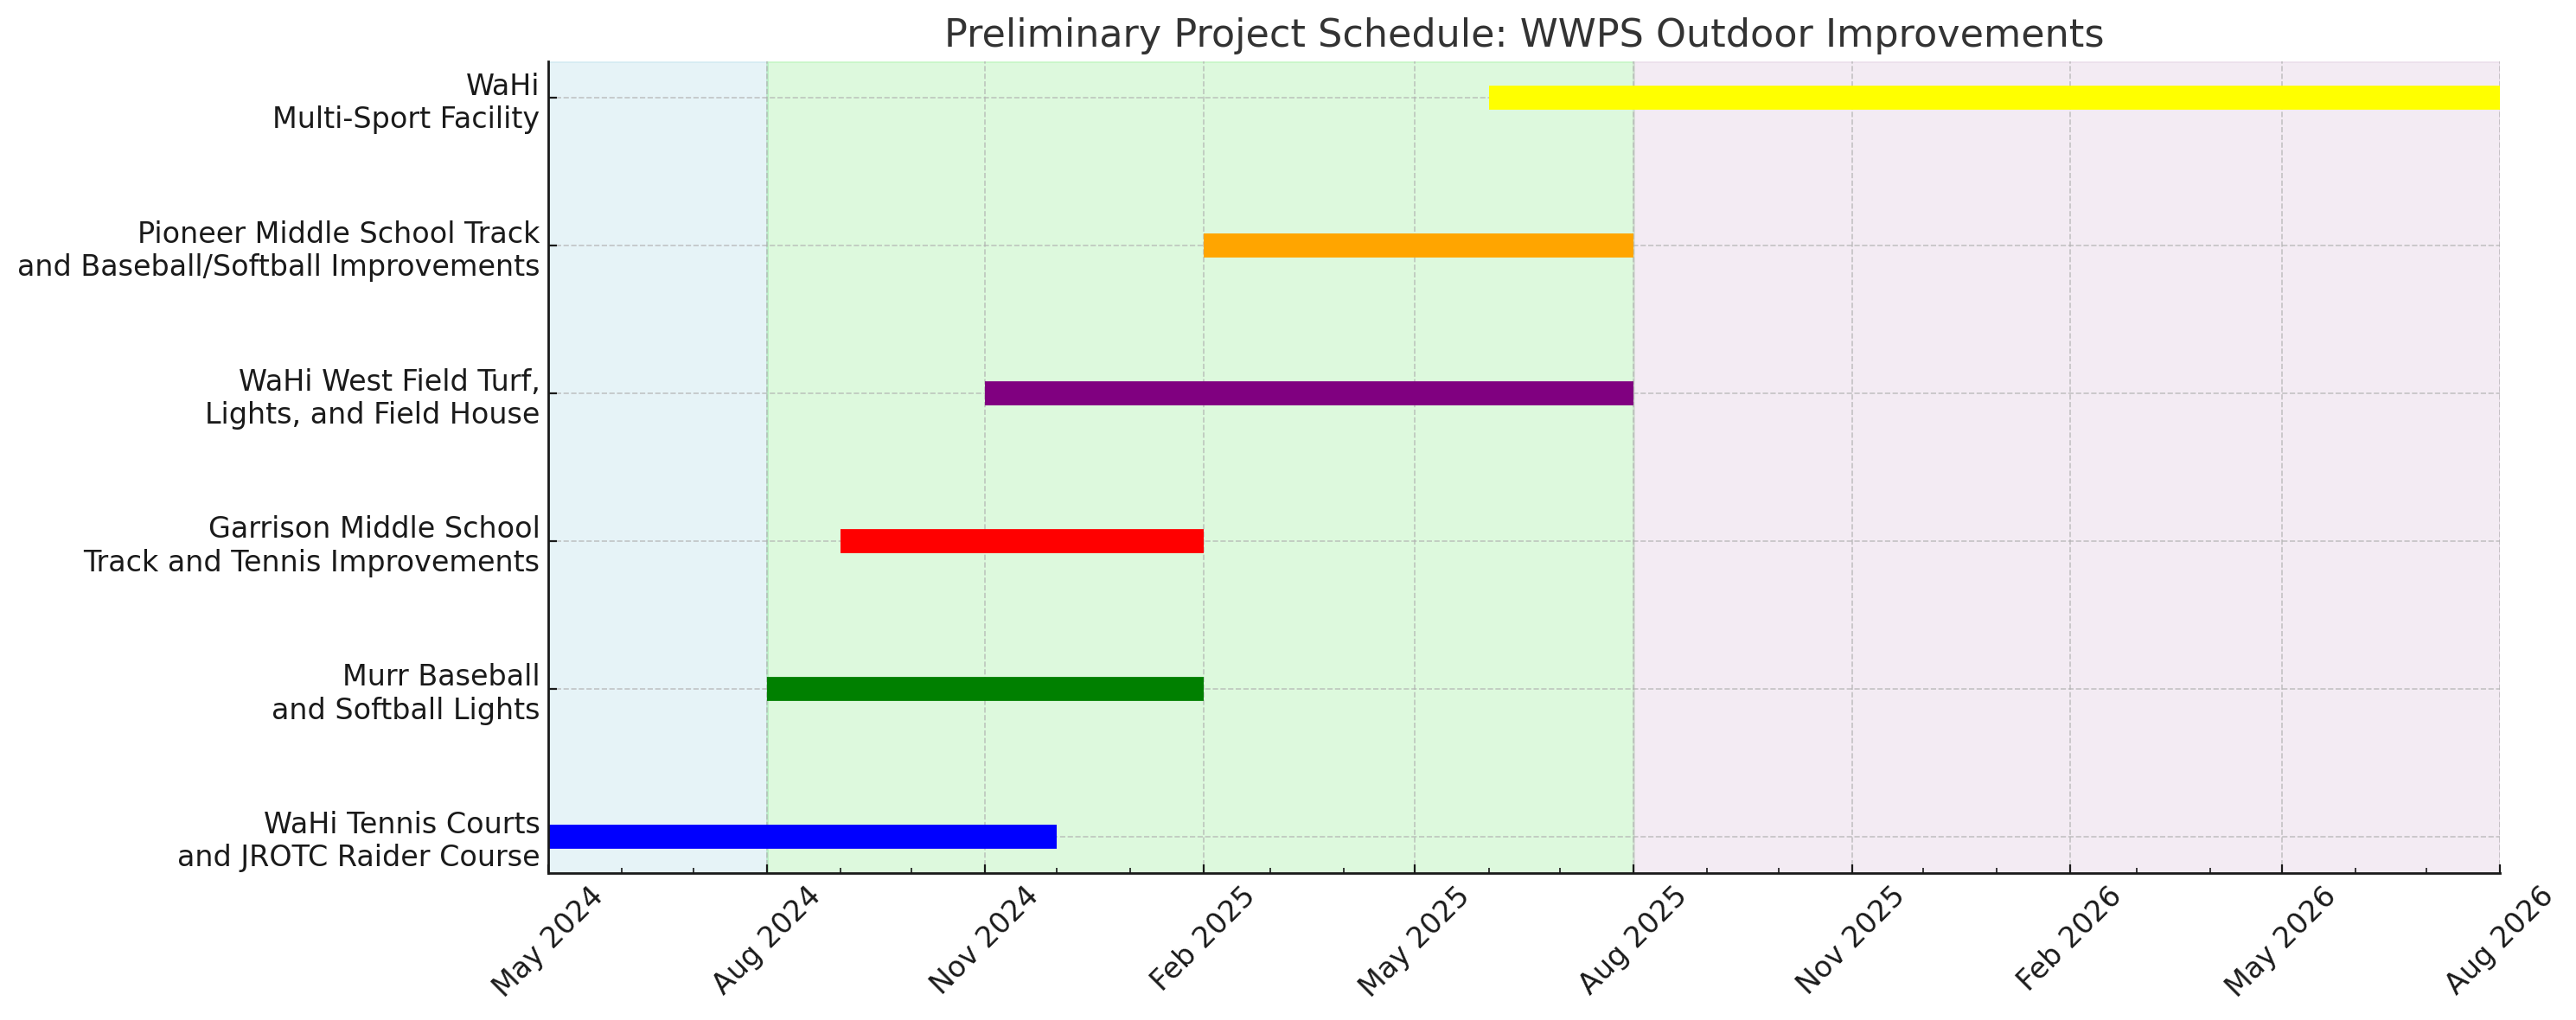 初步项目进度 WWPS 调整 2